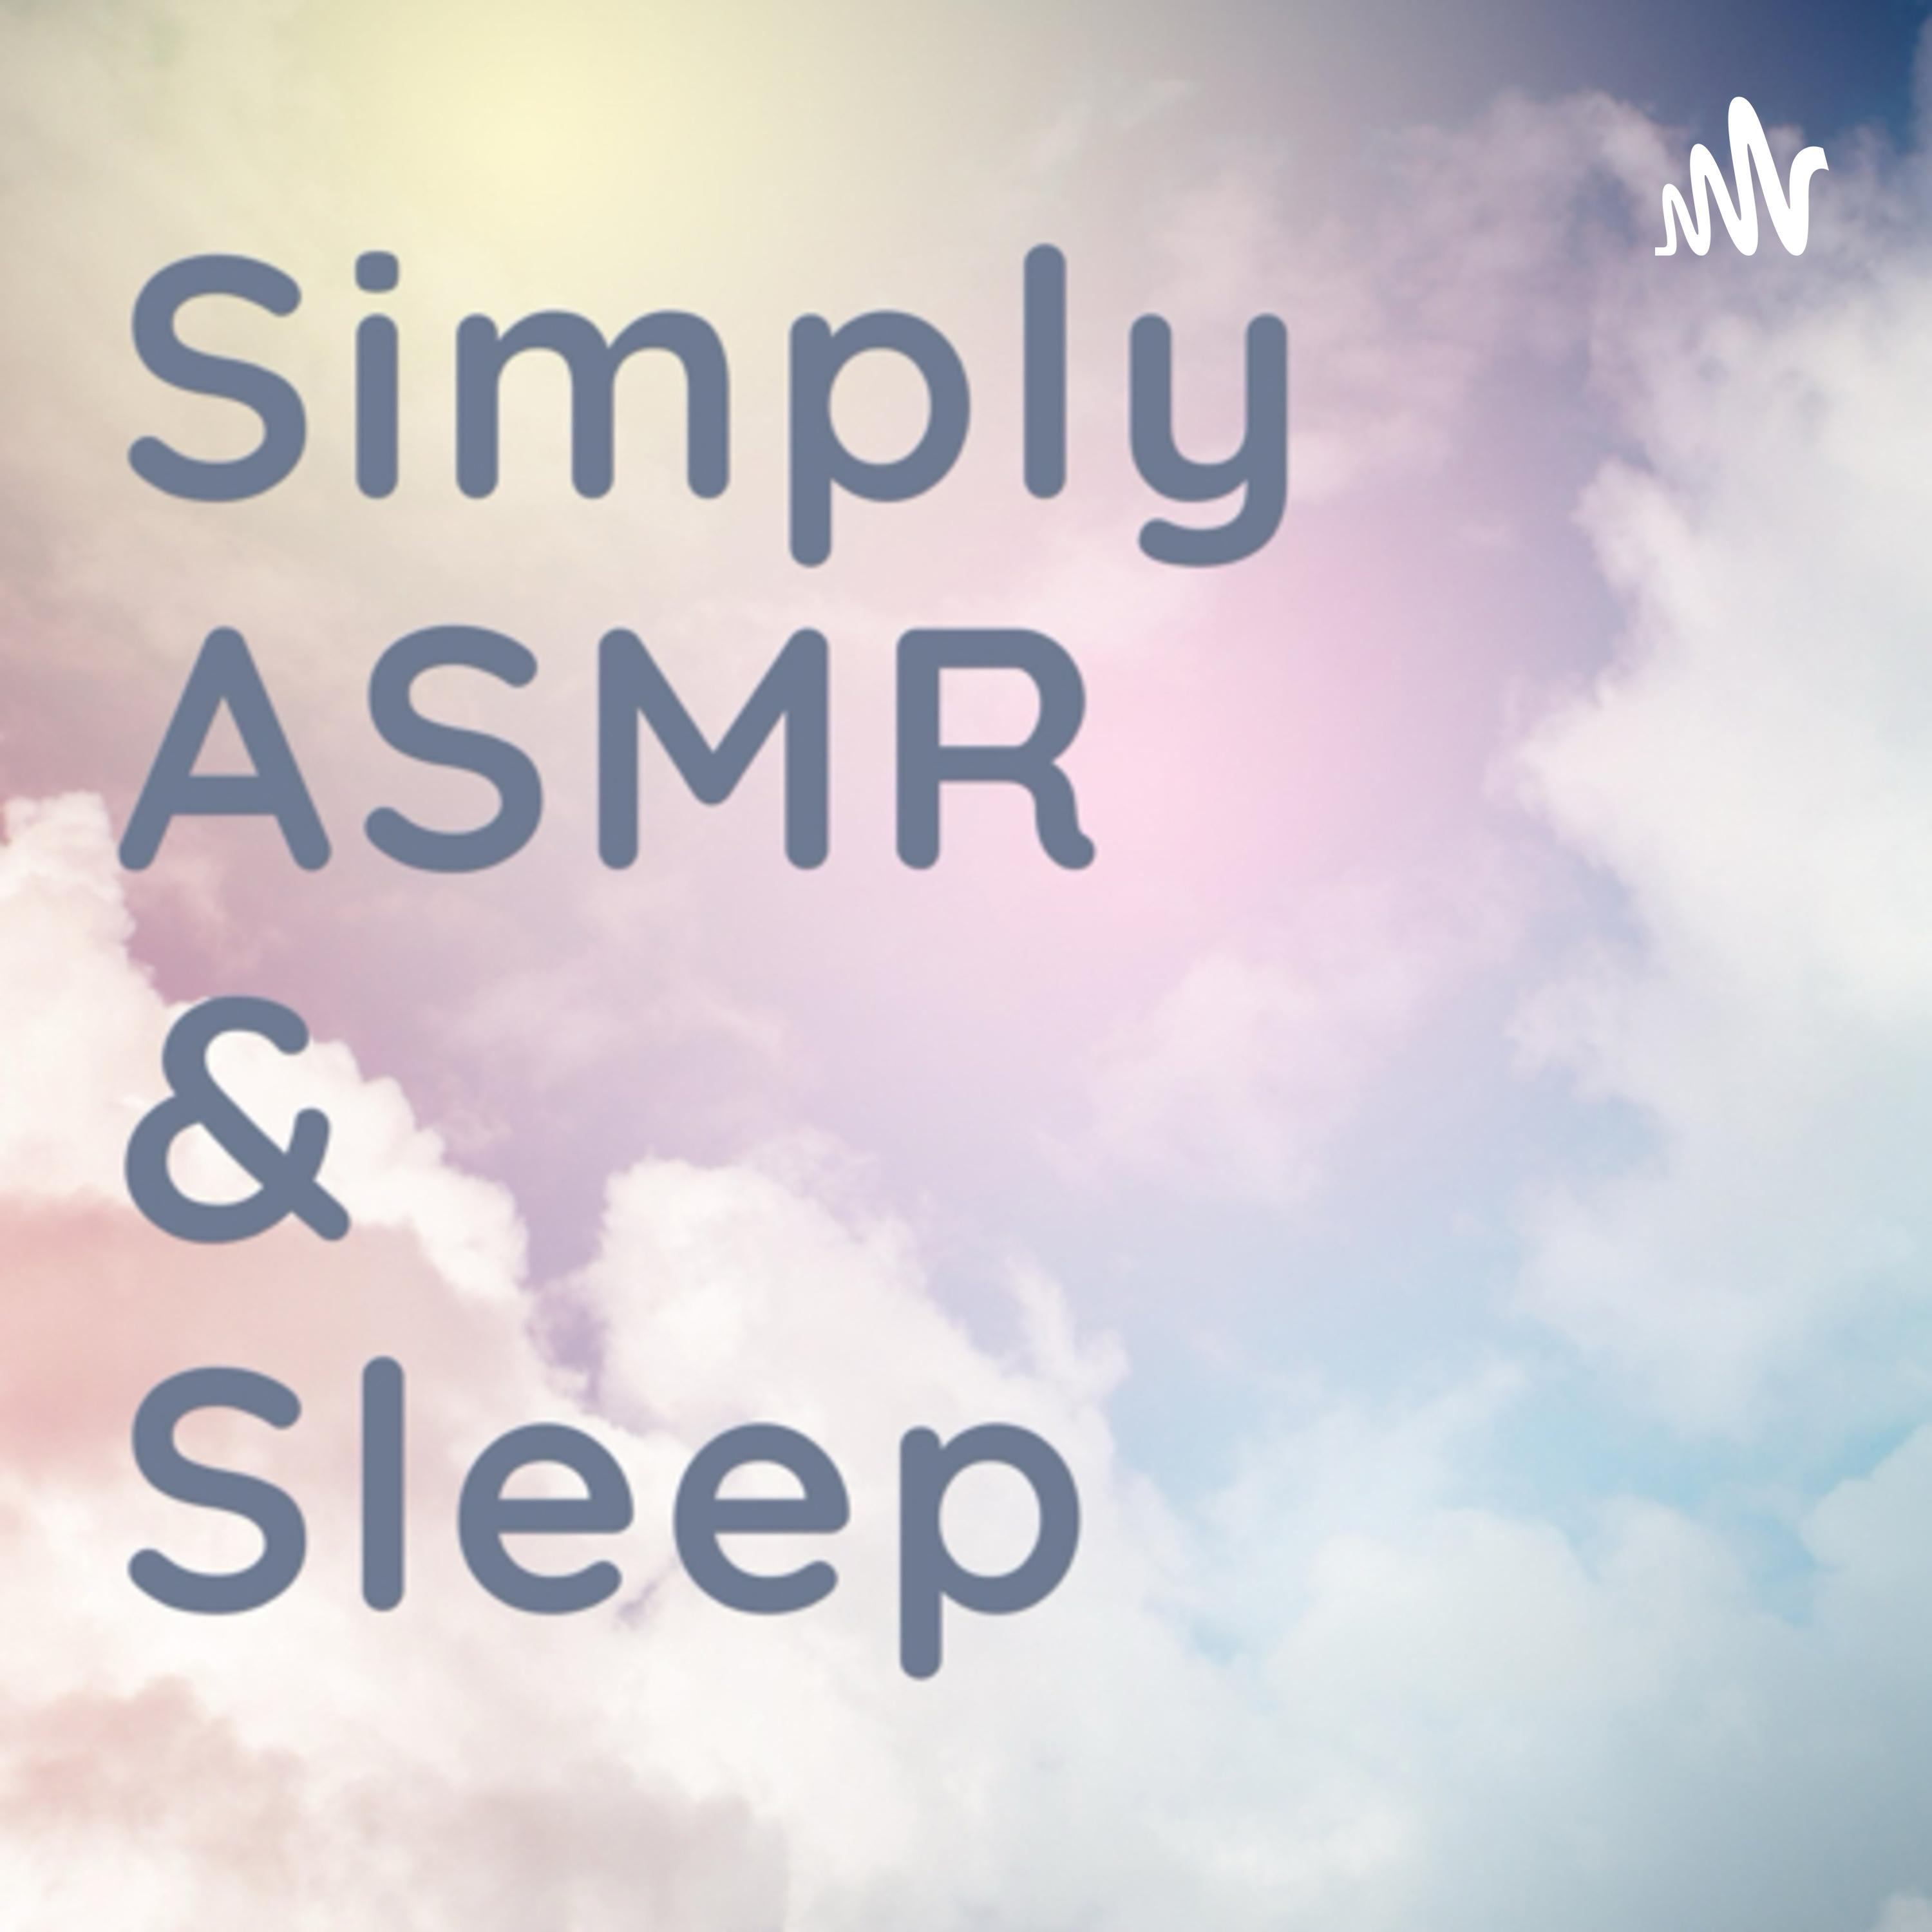 ASMR: By the Fire -ASMR relaxation sleep